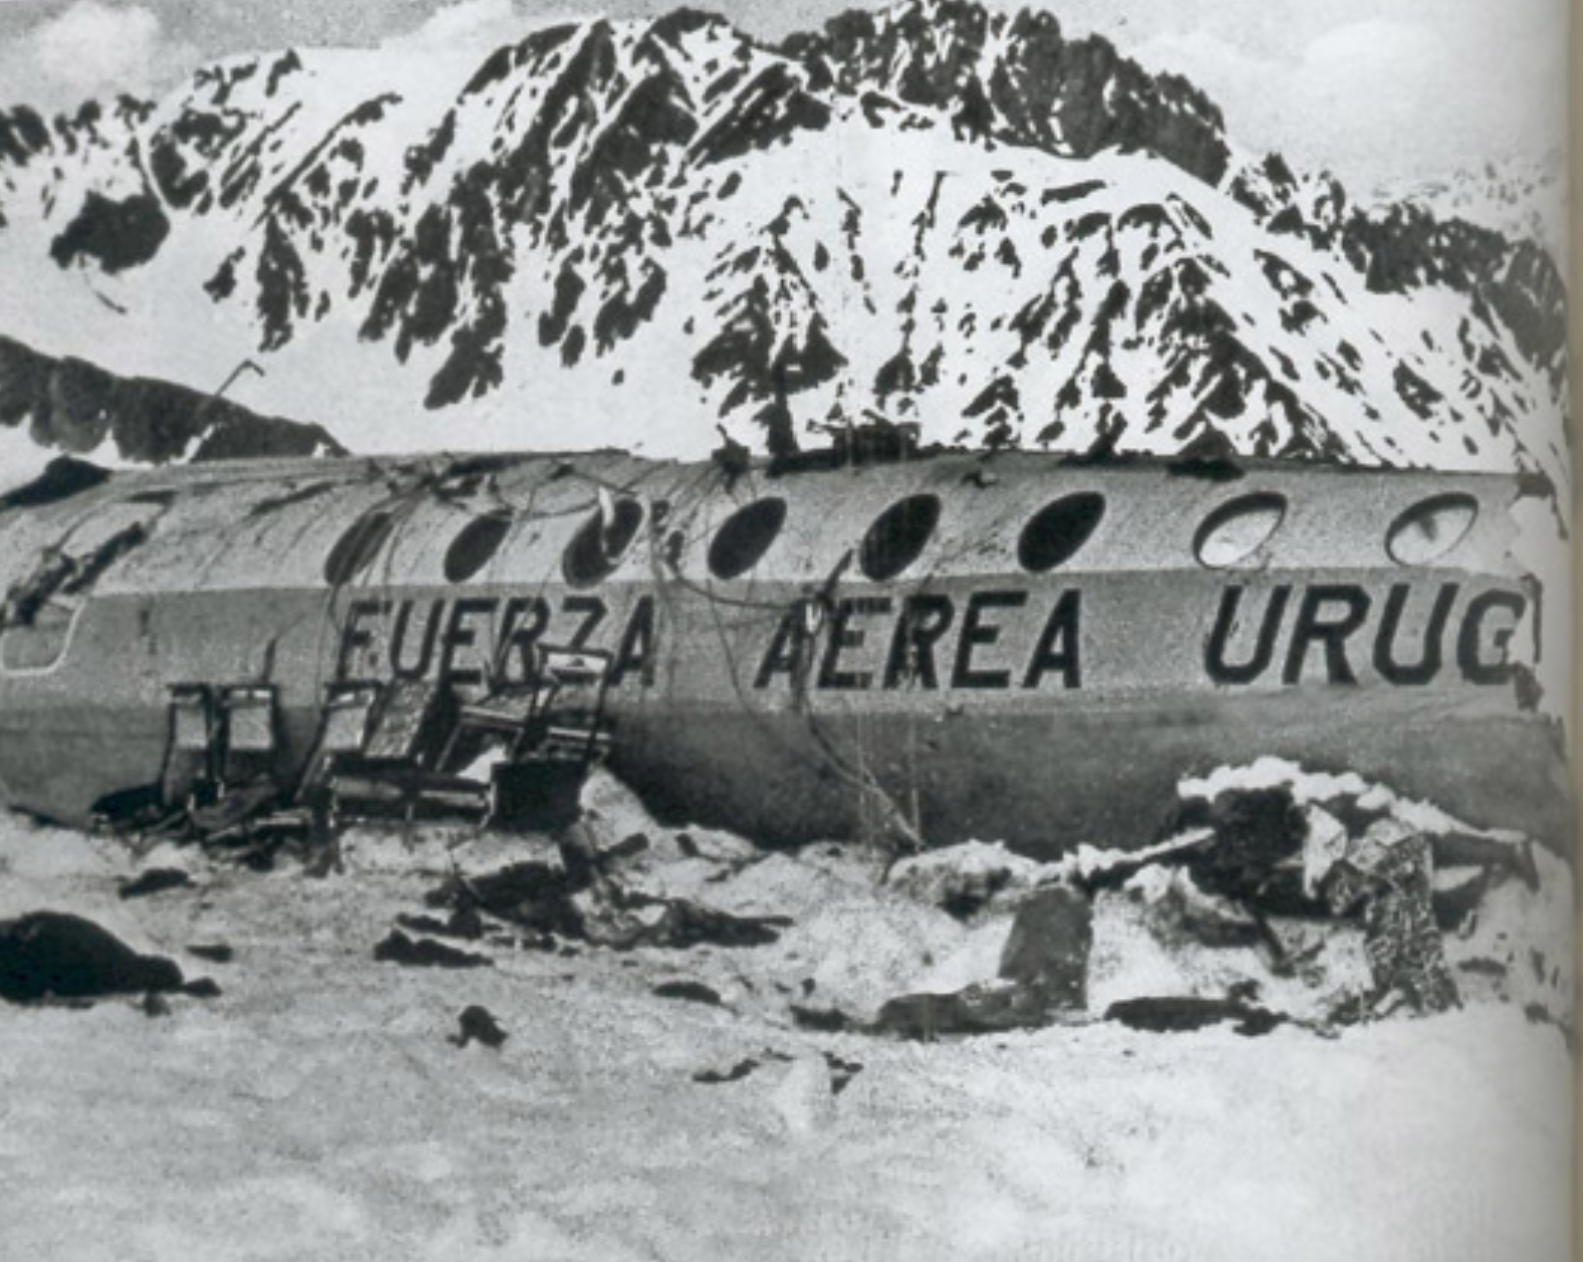 Рейс 571 уругвайских ВВС В Андах. 13 Октября 1972 года чудо в Андах. Уругвай авиакатастрофа